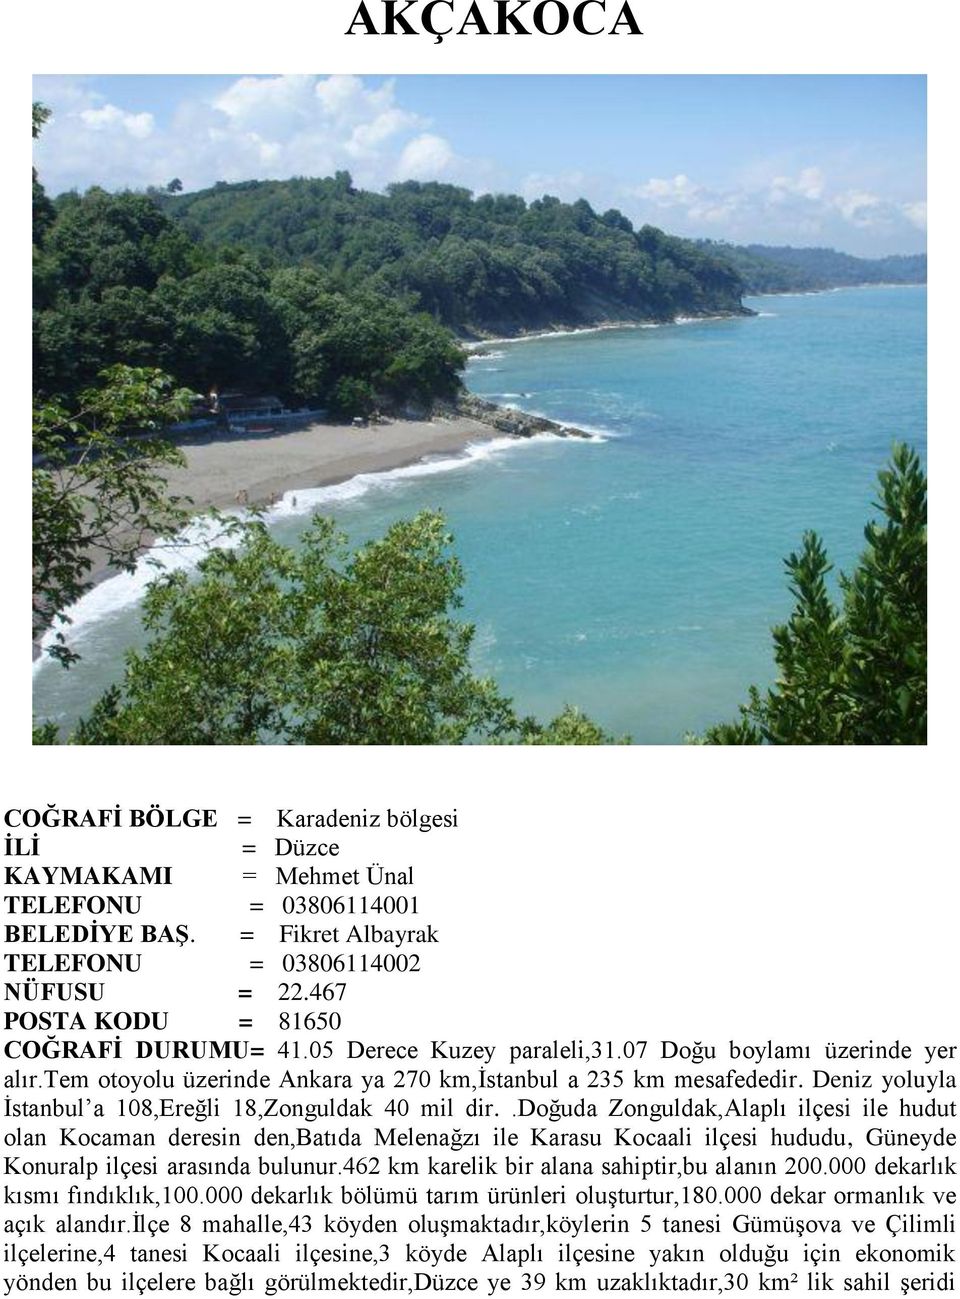 Deniz yoluyla Ġstanbul a 108,Ereğli 18,Zonguldak 40 mil dir.